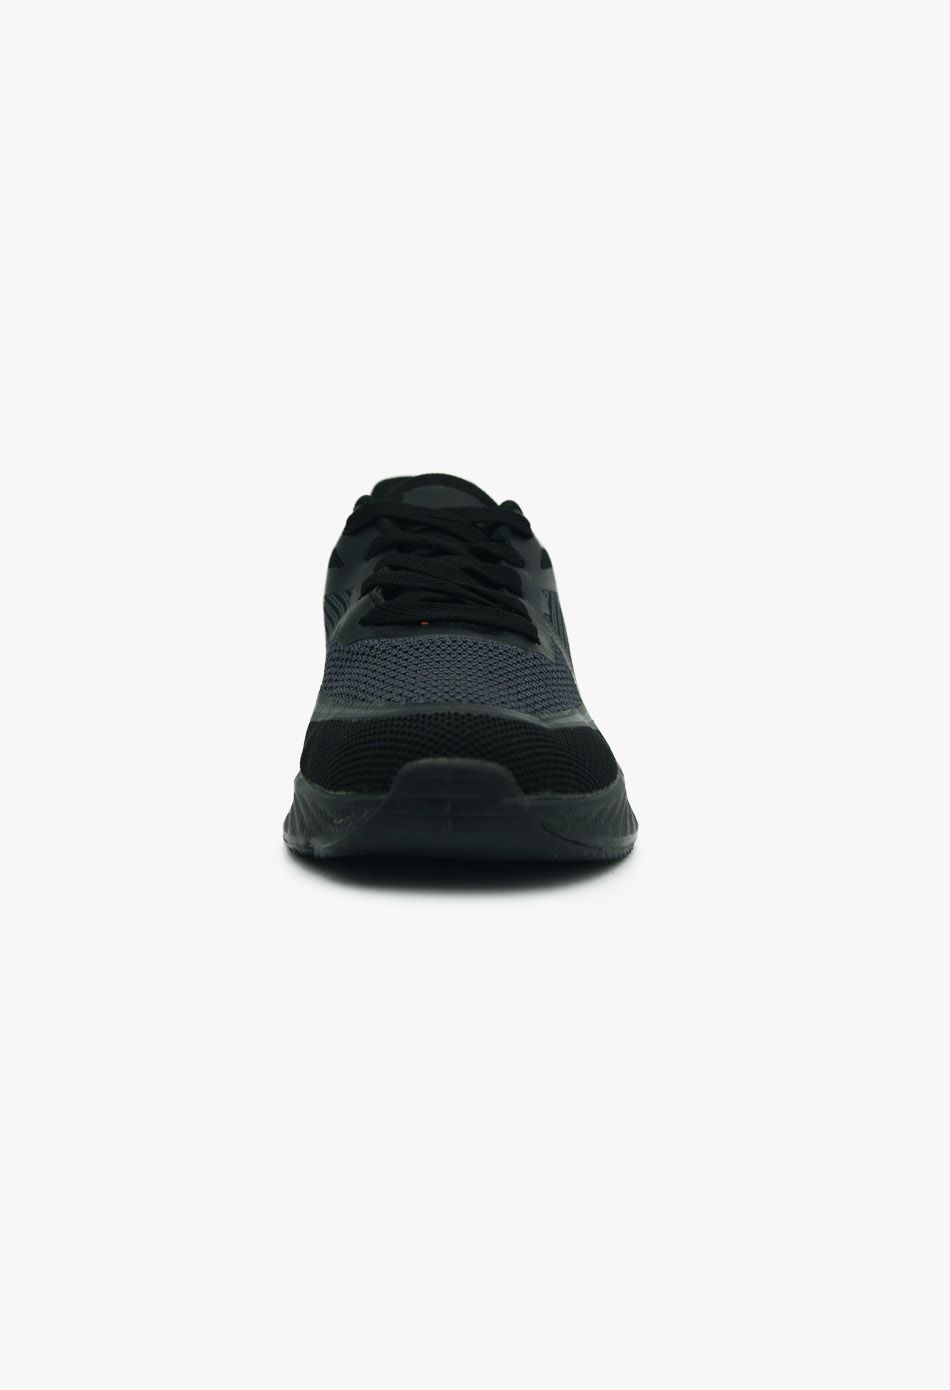 Ανδρικά Αθλητικά Παπούτσια για Τρέξιμο Μαύρο / A-49-black ΑΘΛΗΤΙΚΑ & SNEAKERS joya.gr